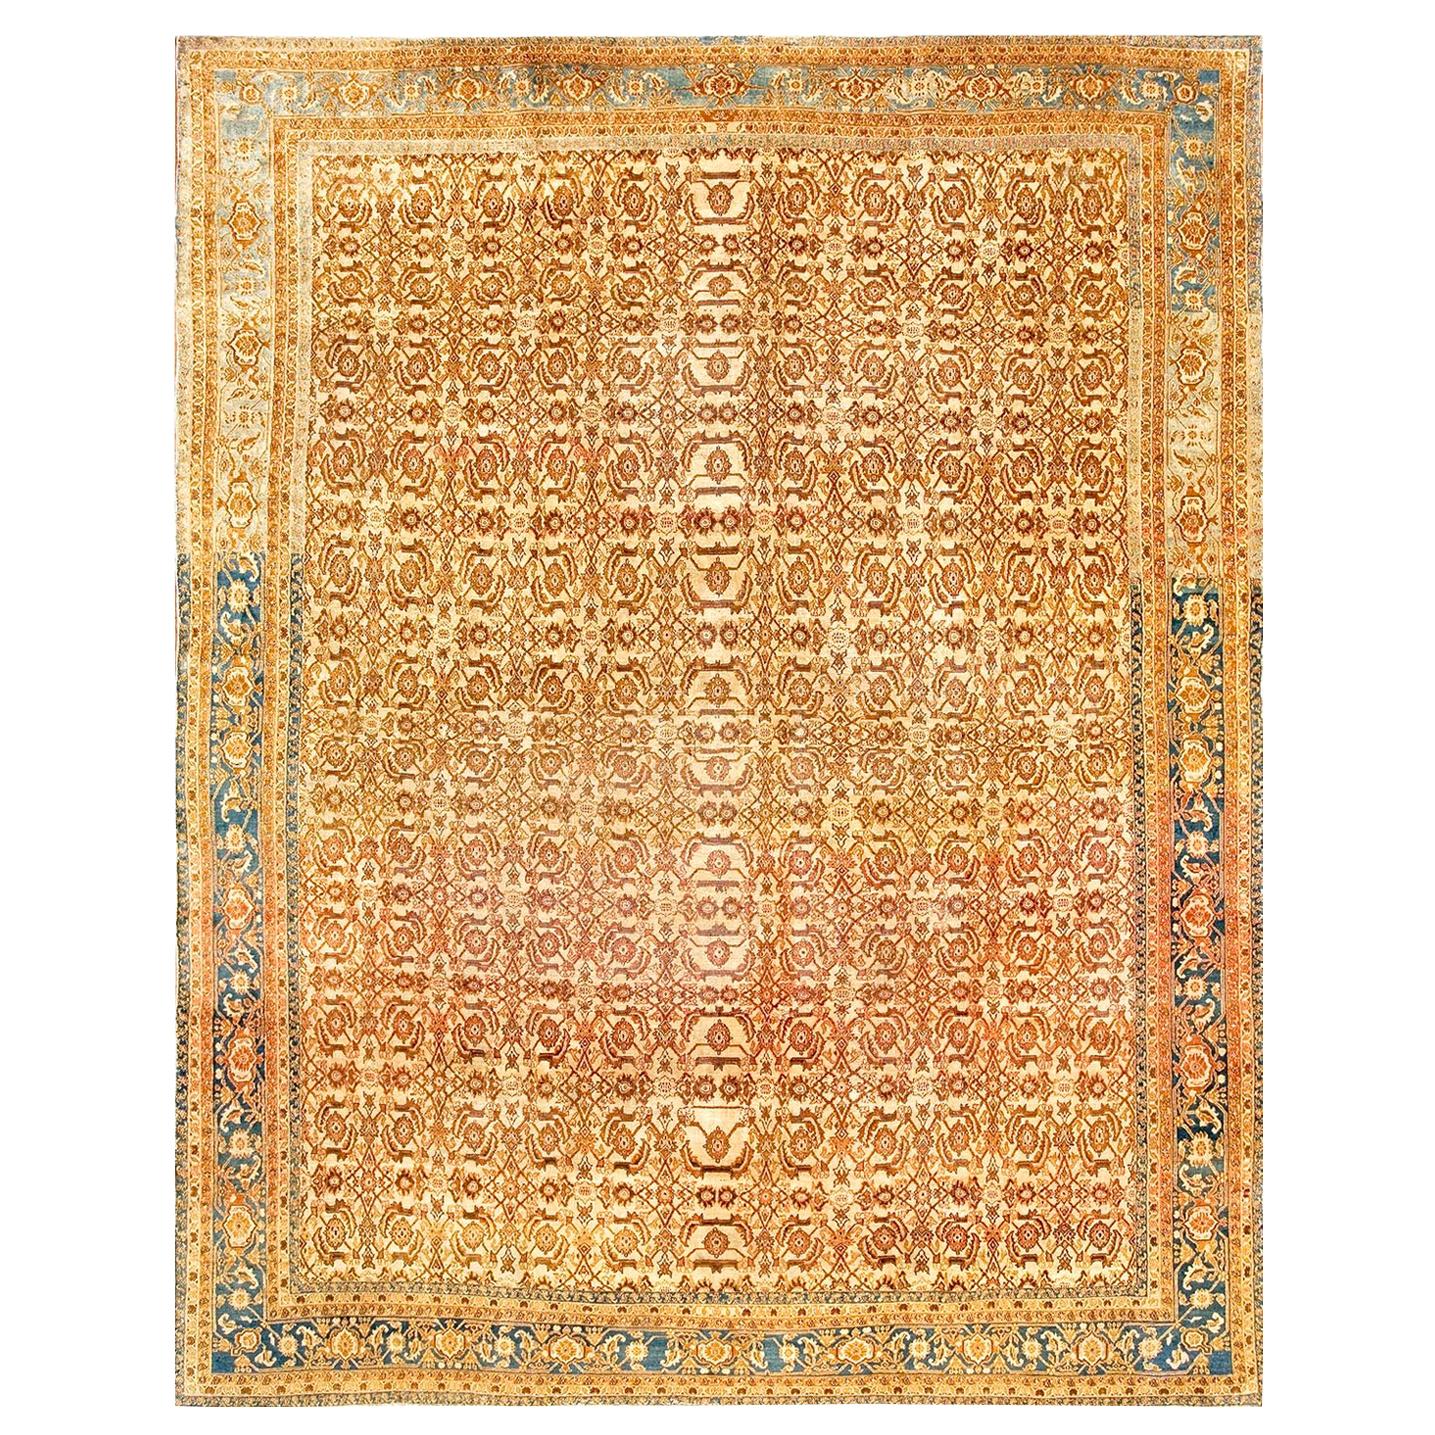 Indischer Agra-Teppich des frühen 20. Jahrhunderts ( 9' x 11'4" - 275 x 345")